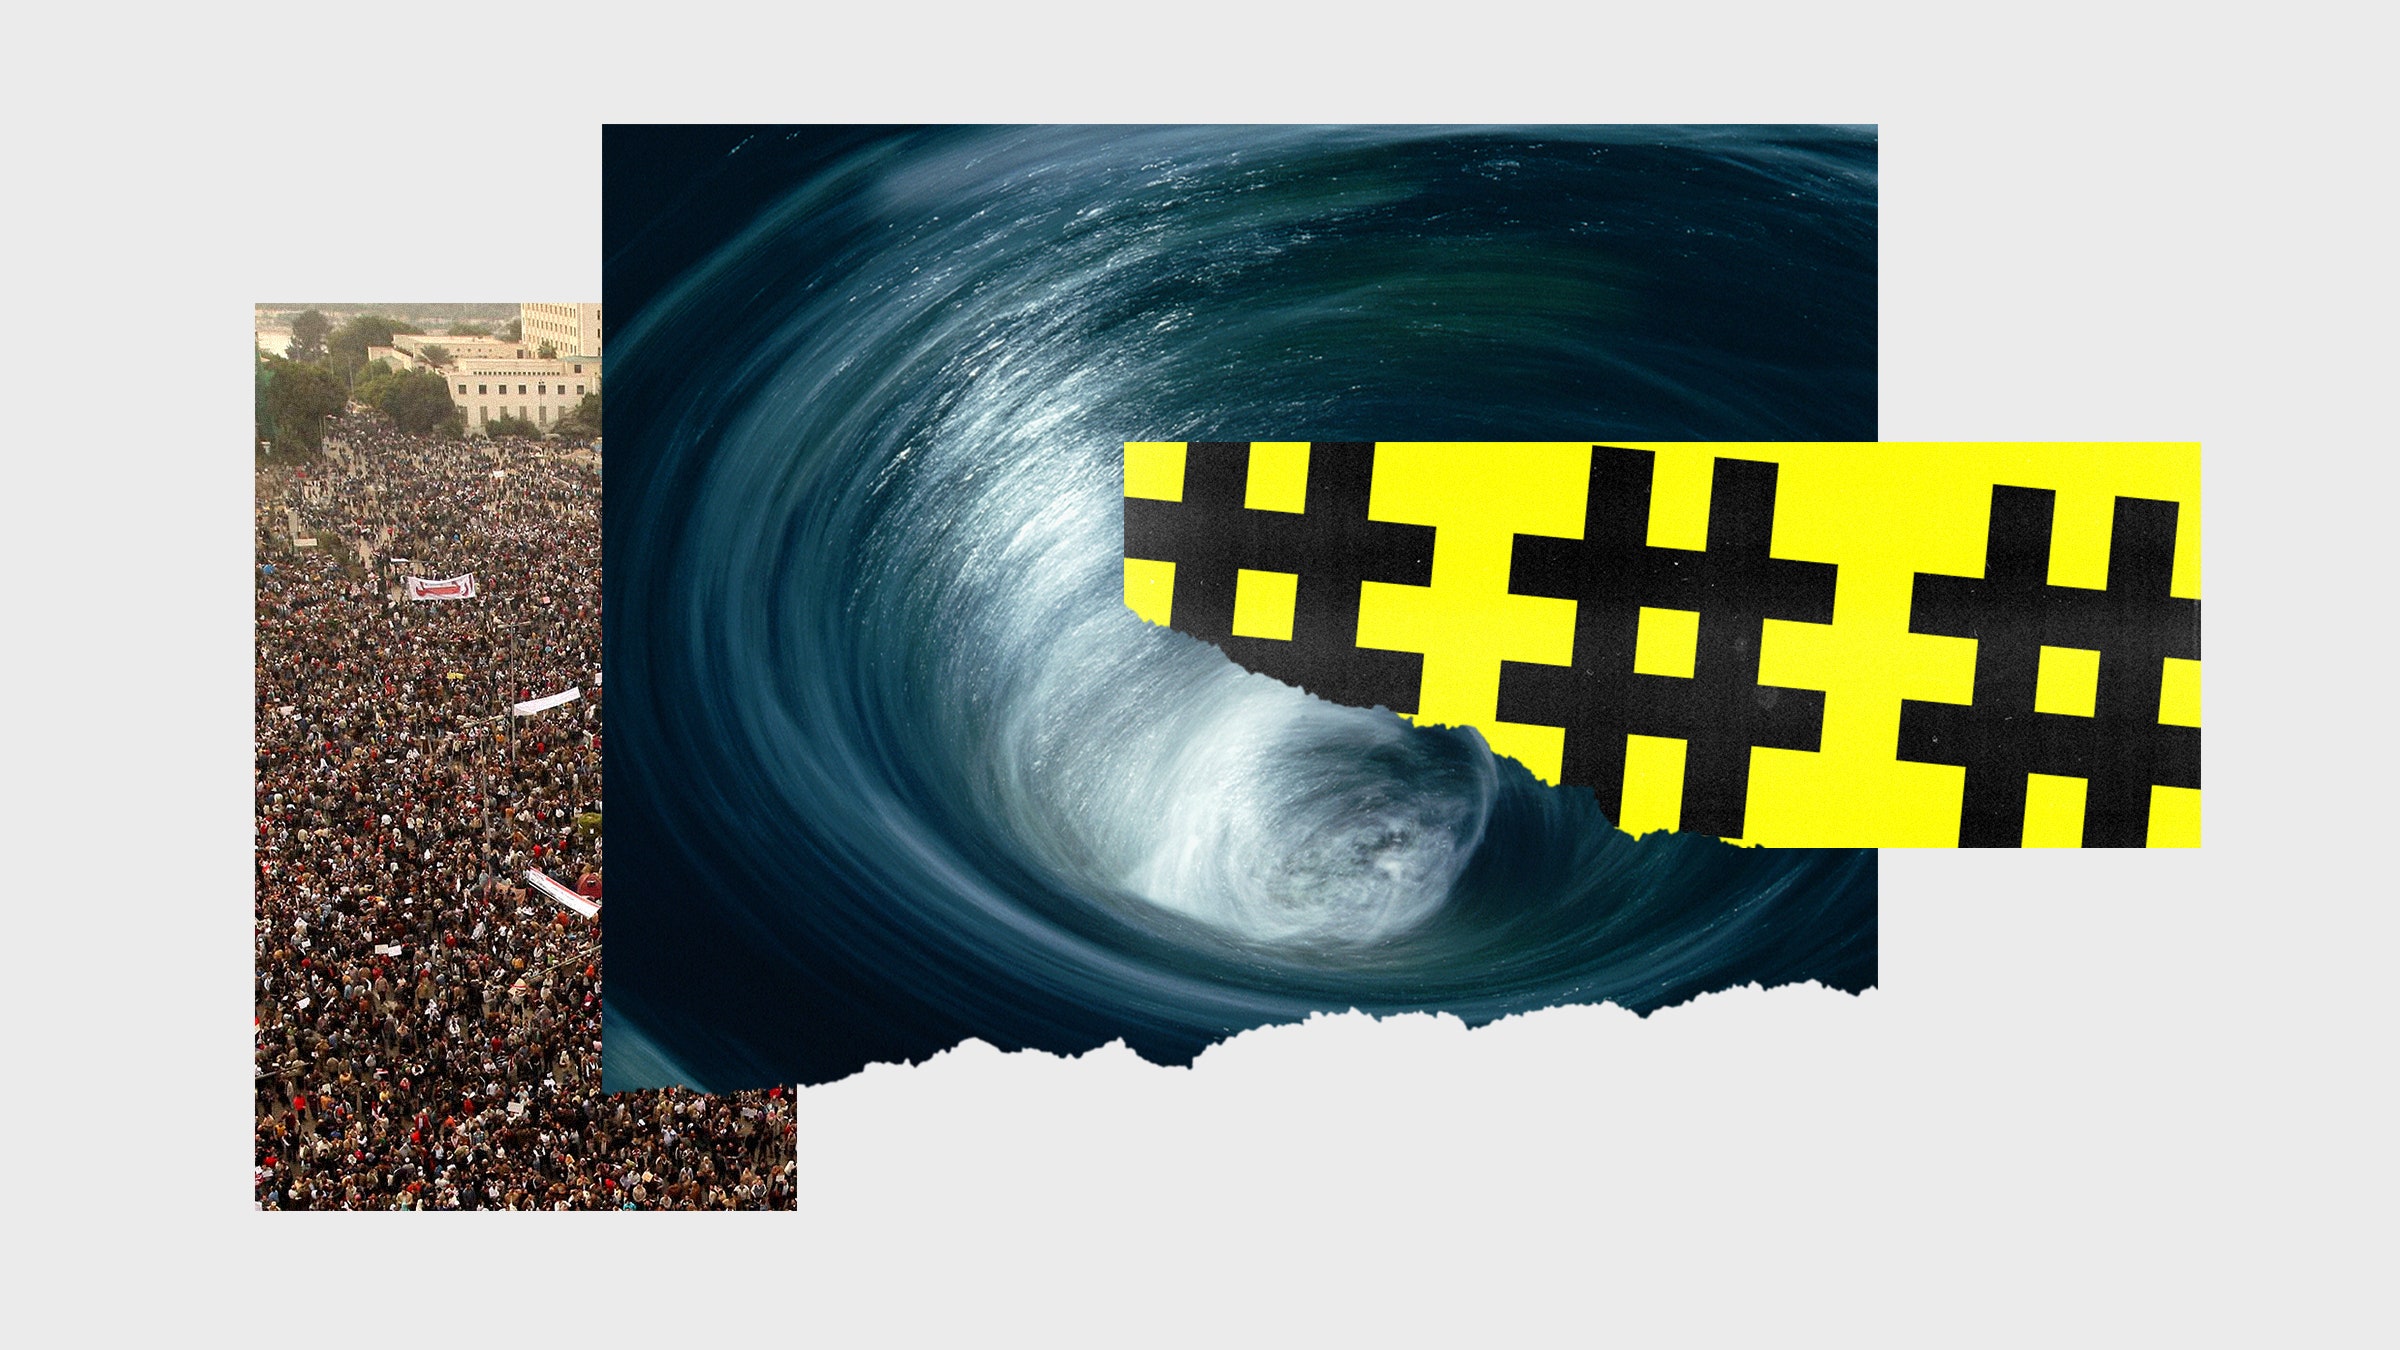 Colagem de fotos de um whirlpool, uma grande multidão de manifestantes e hashtags